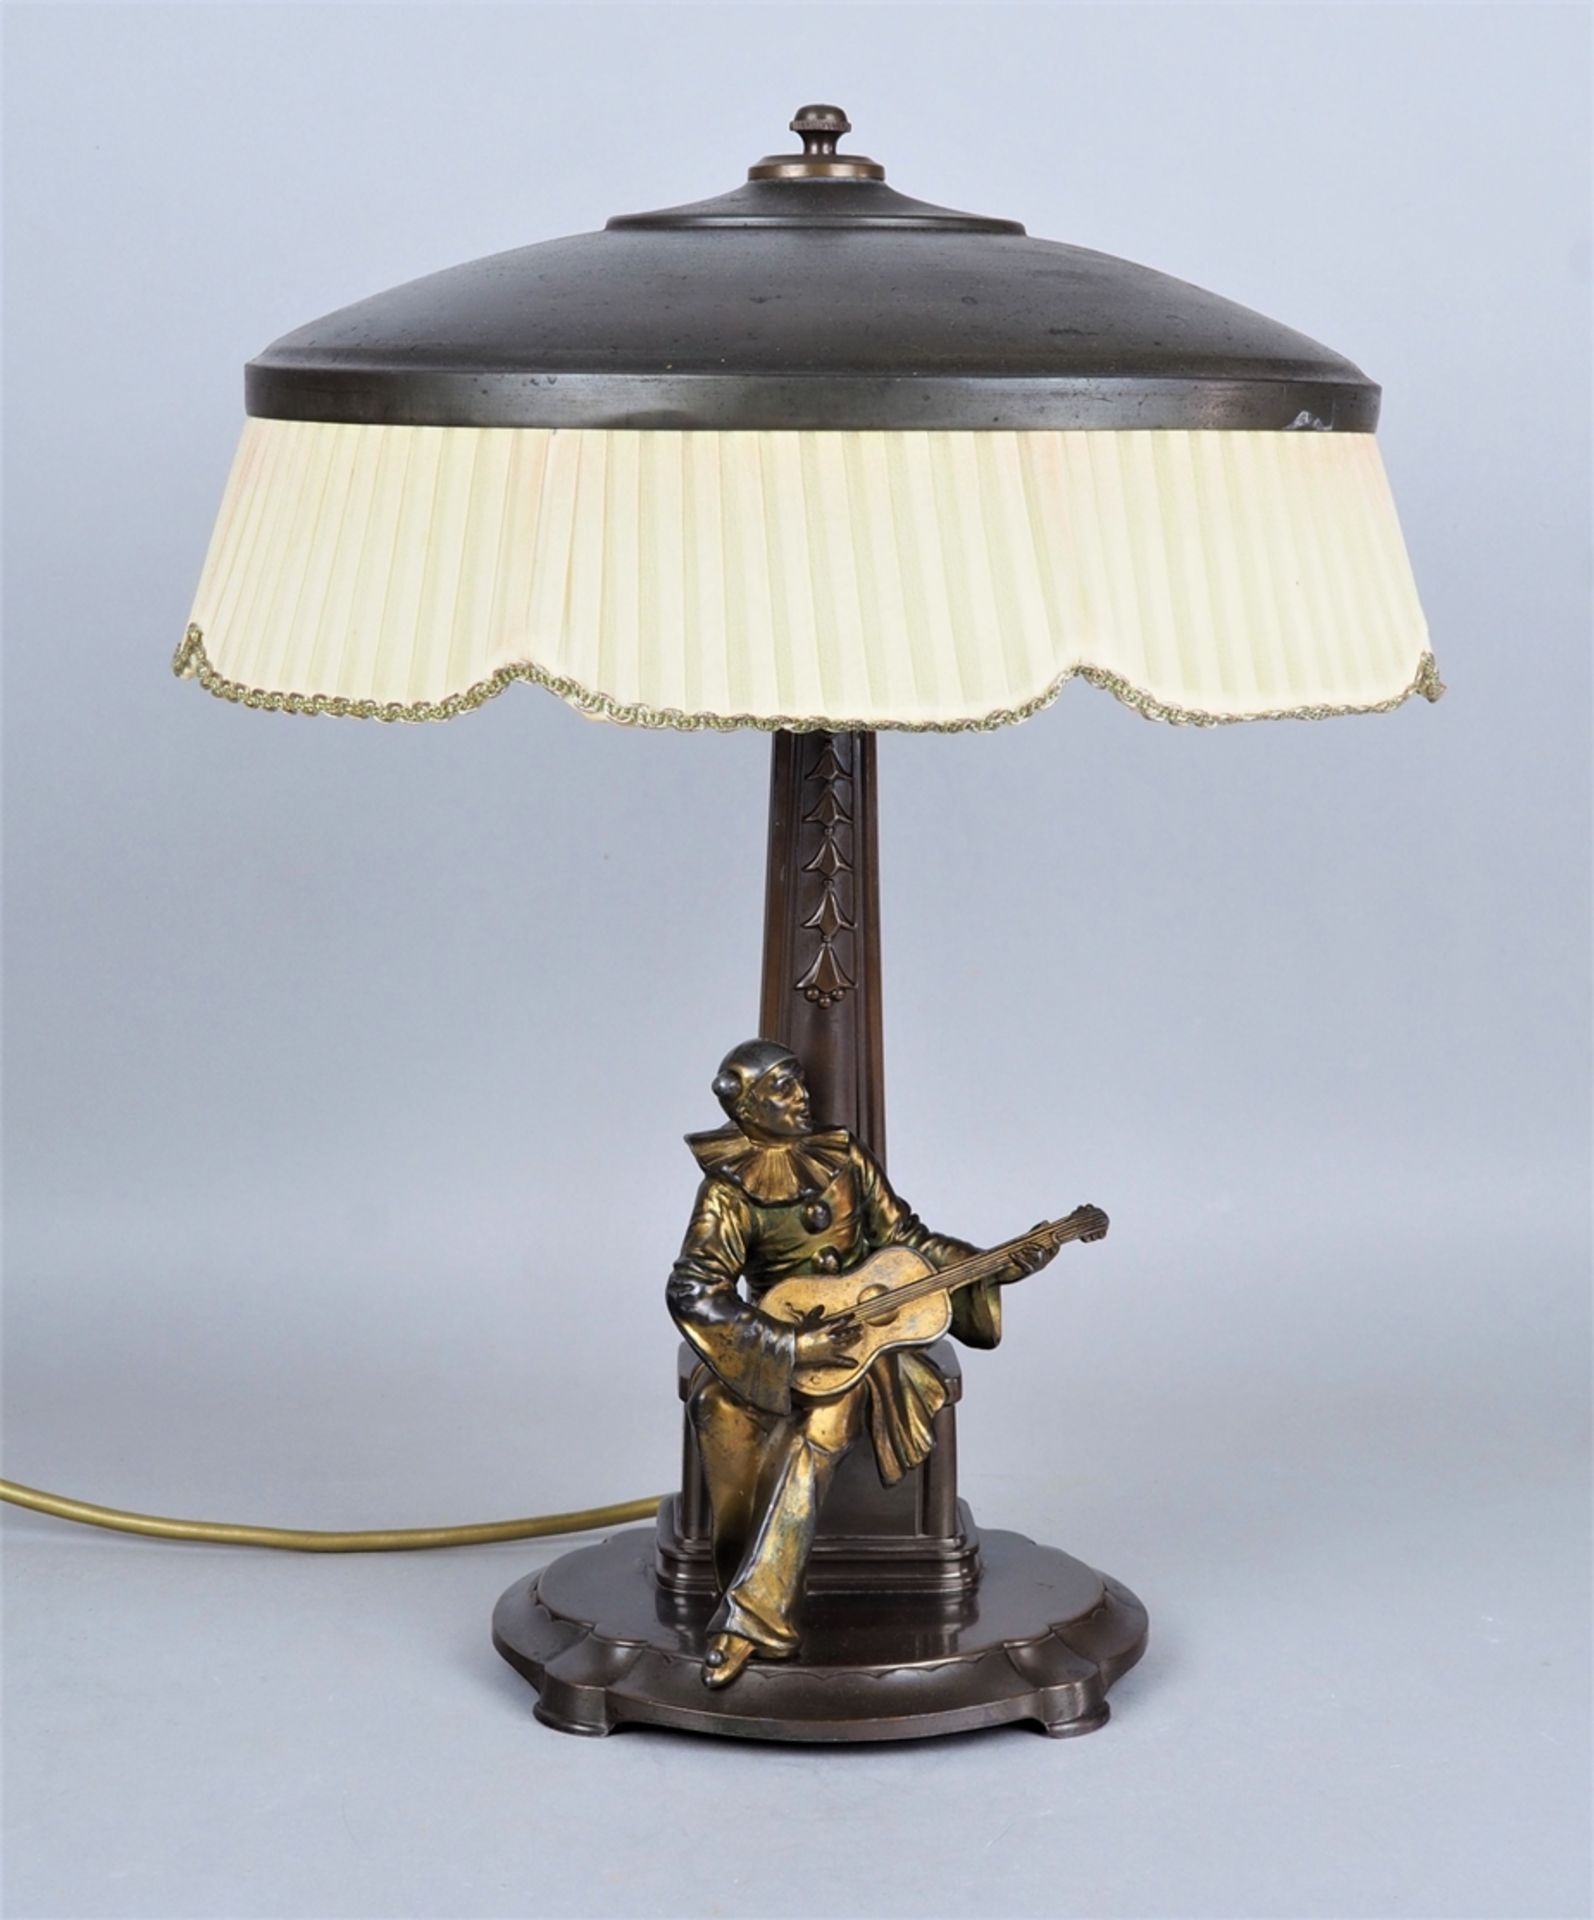 Art Deco table lamp around 1920